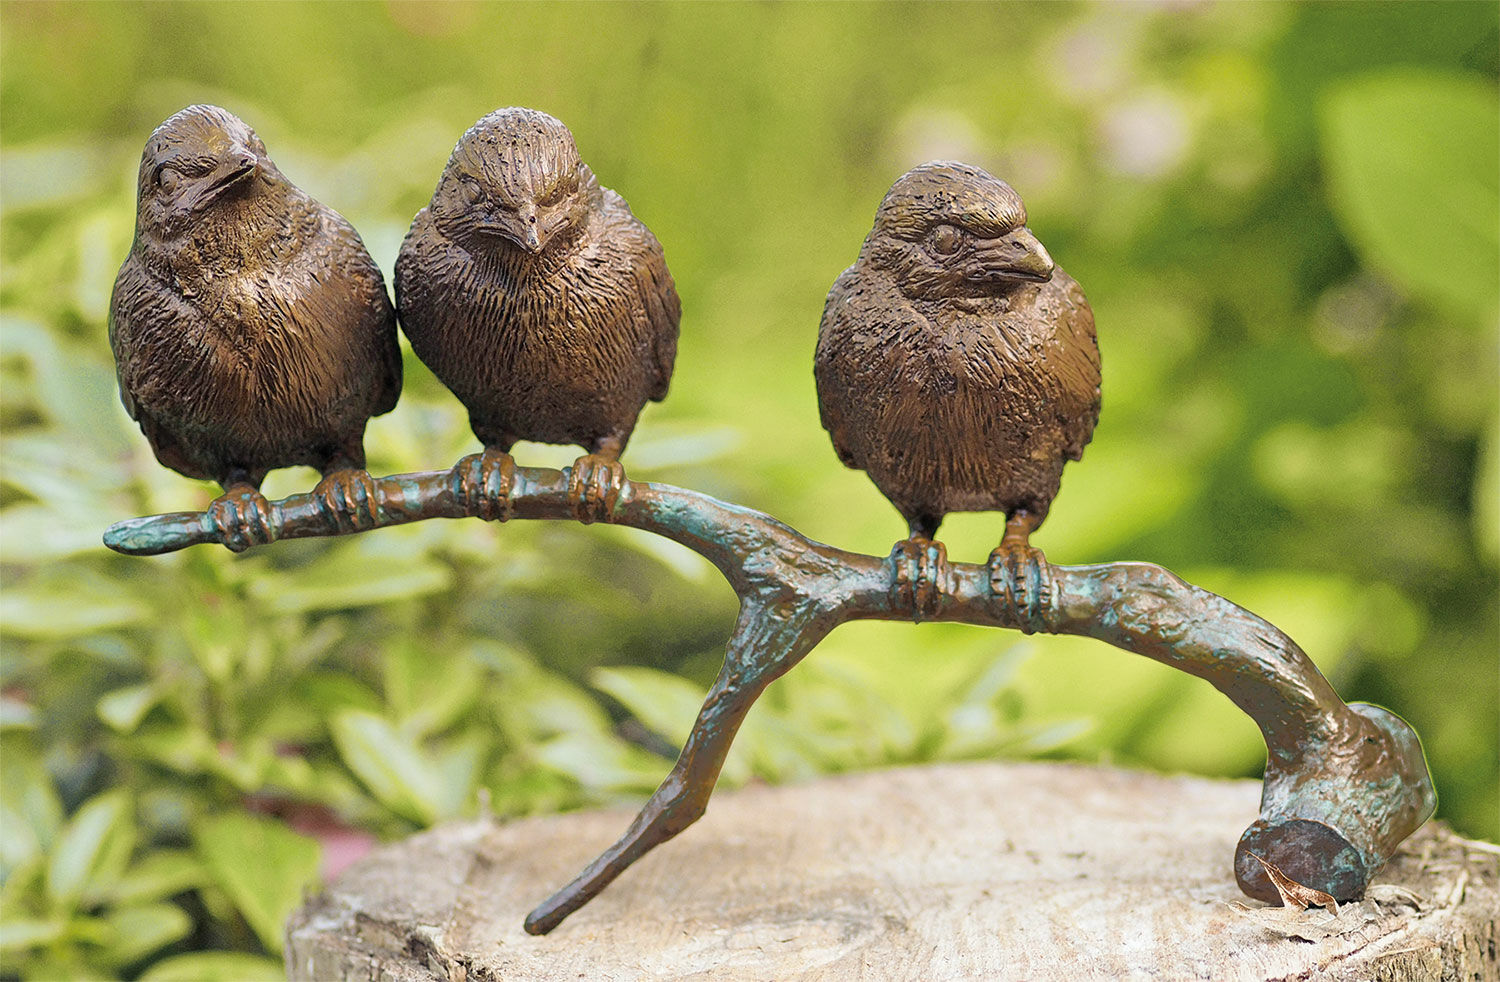 Garden sculpture "Birds on Branch", bronze